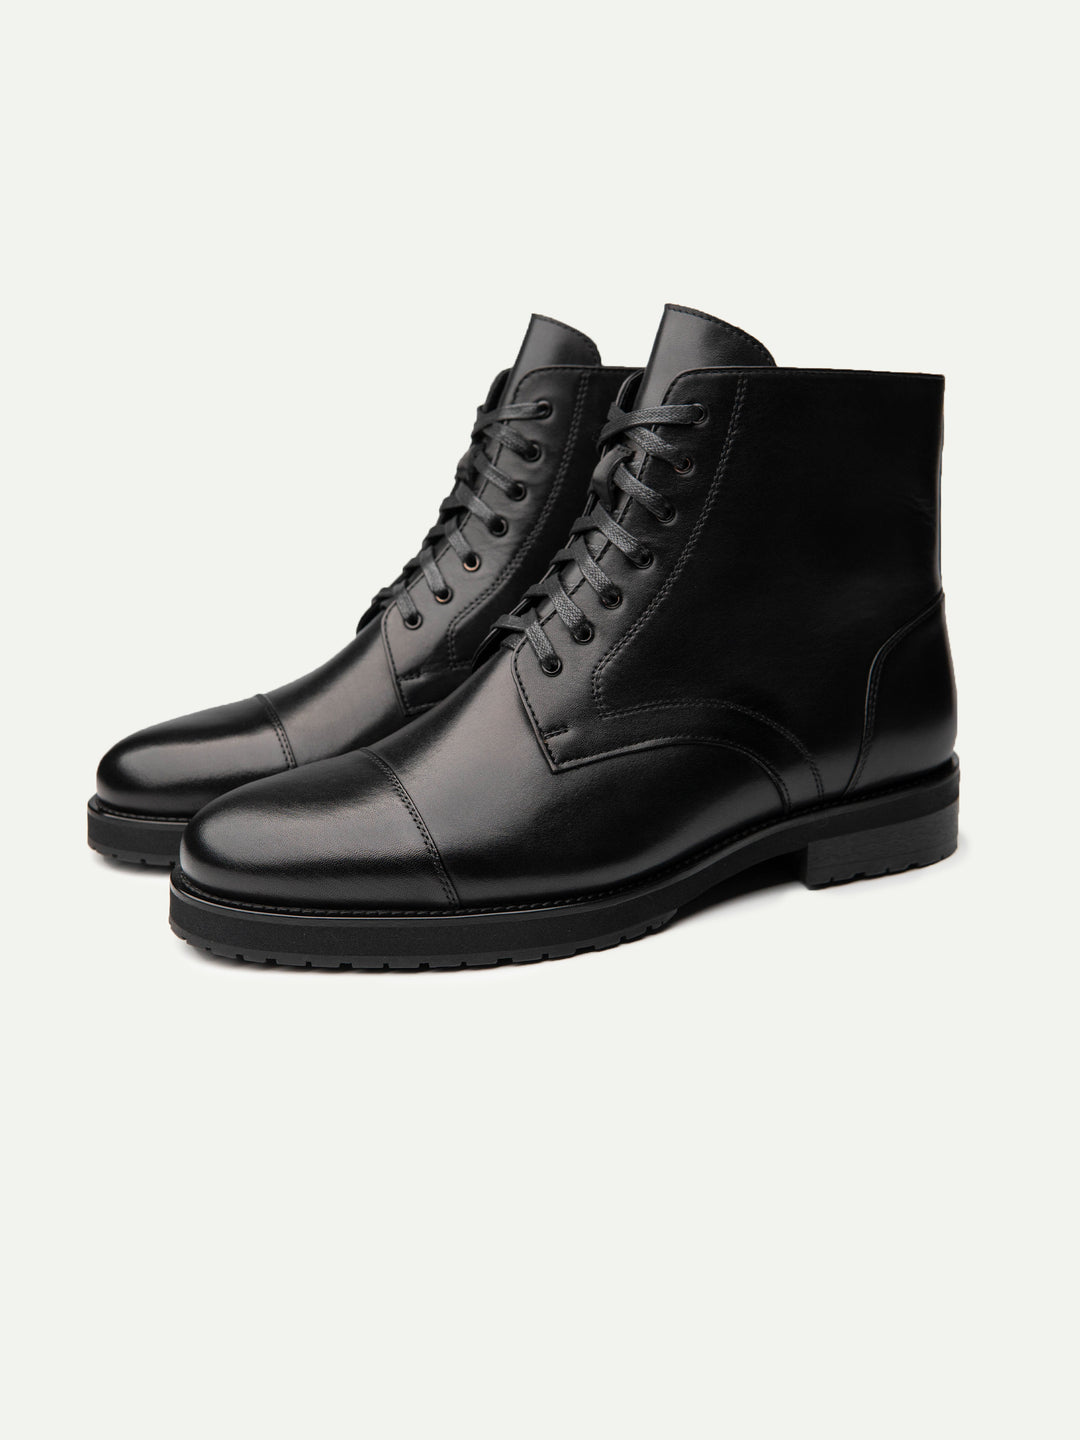 Belltown boots